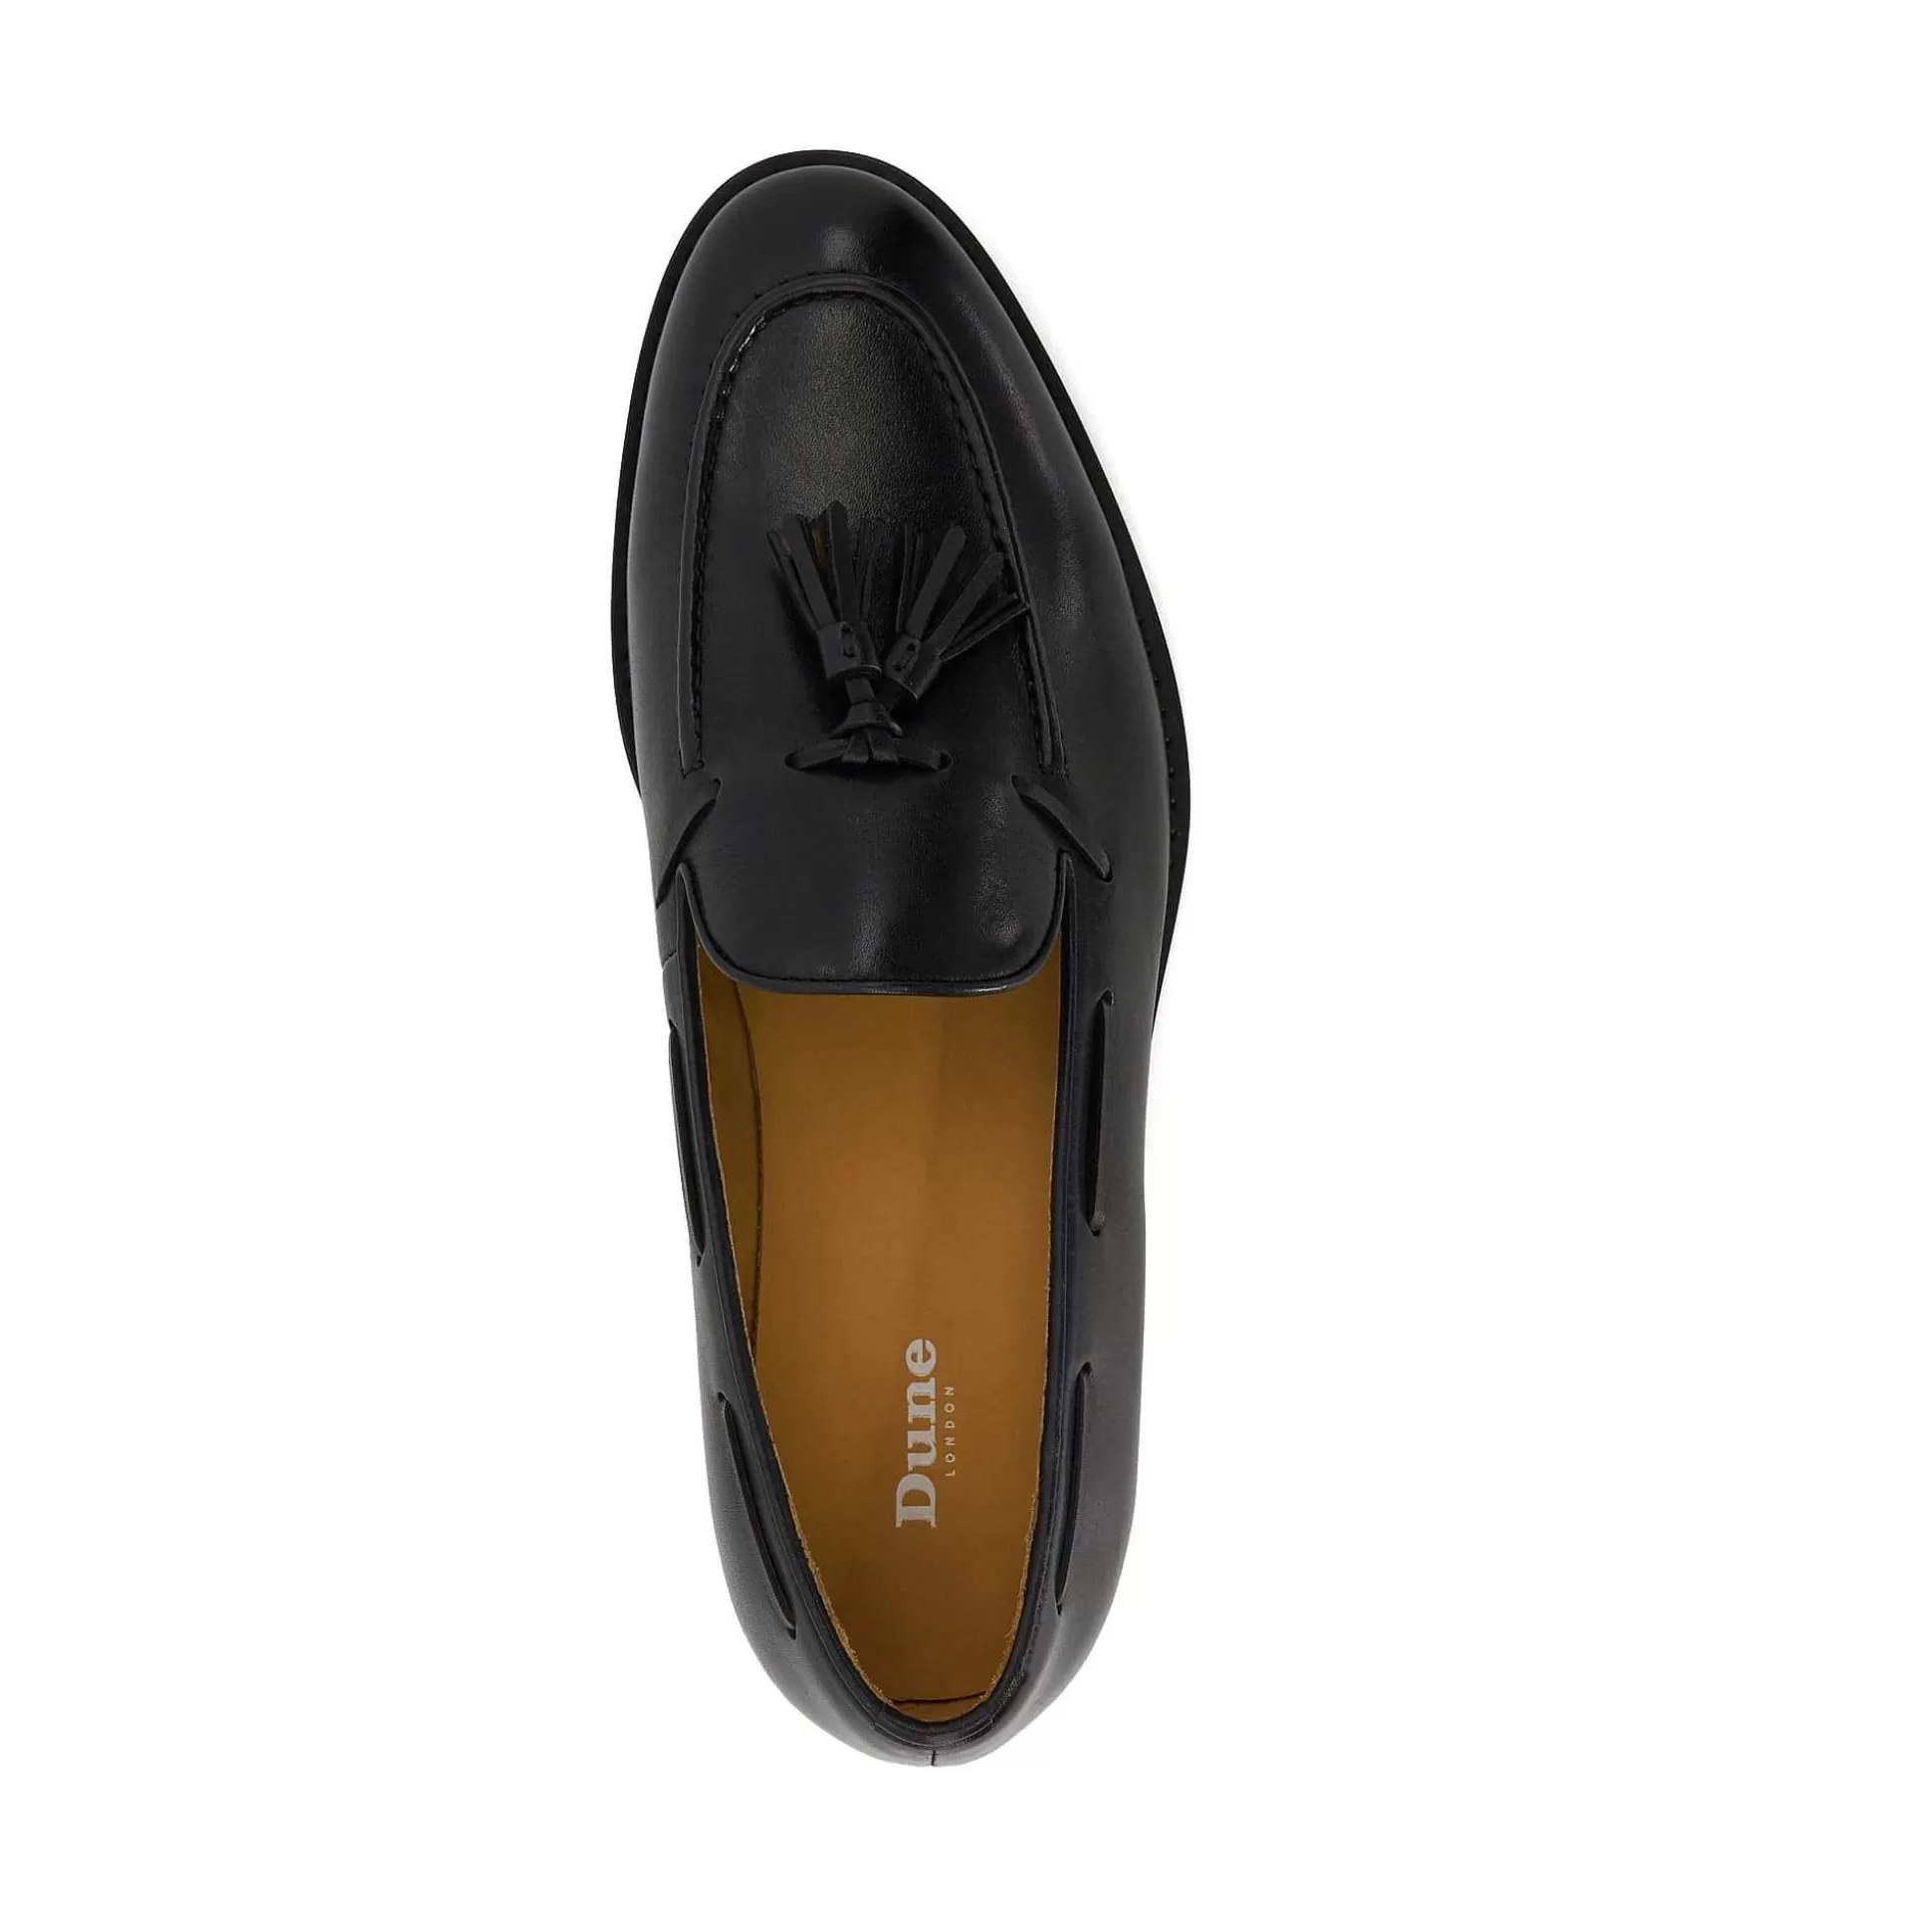 Dune London SANDDERS - BLACK-Men Smart Shoes | Loafers